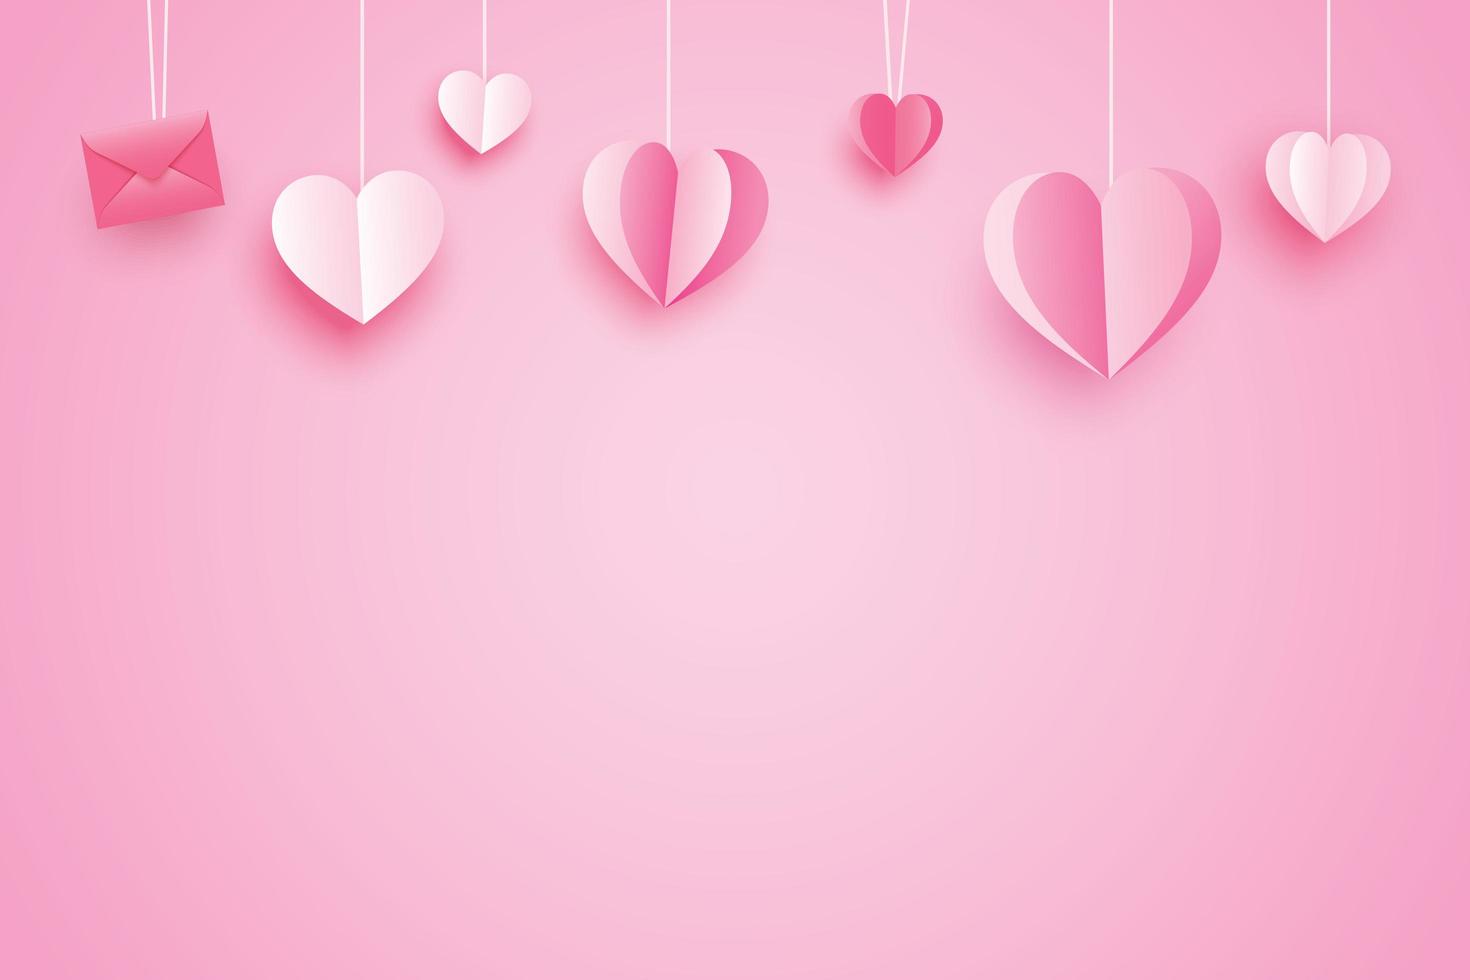 cuori di carta rosa su sfondo rosa per lo sfondo di San Valentino foto